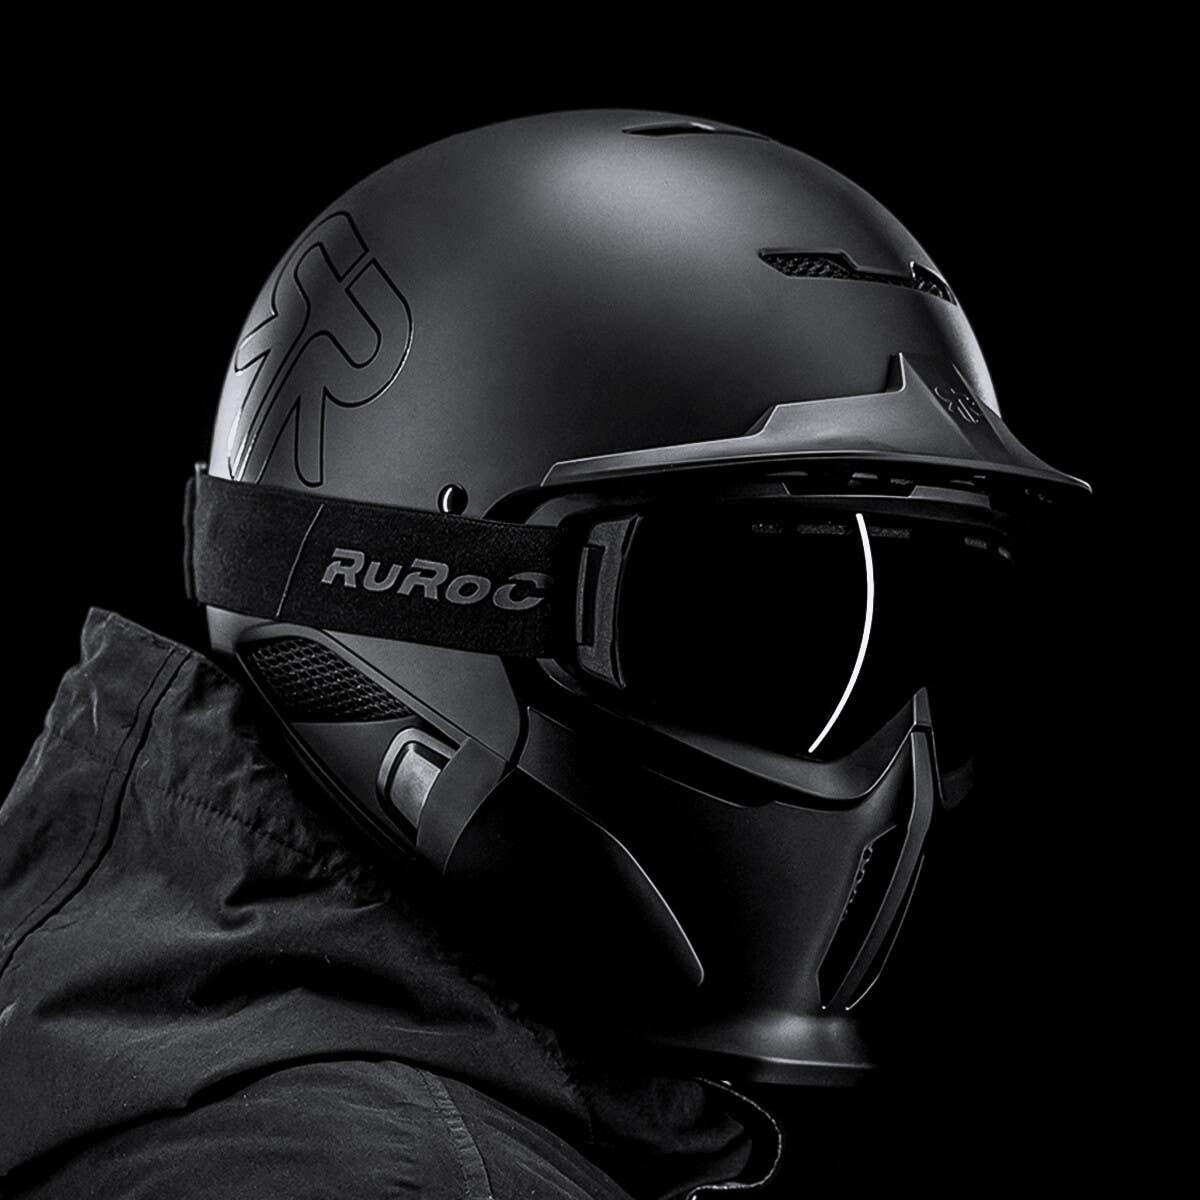 RG1-DX Core - Full Face Ski Helmet